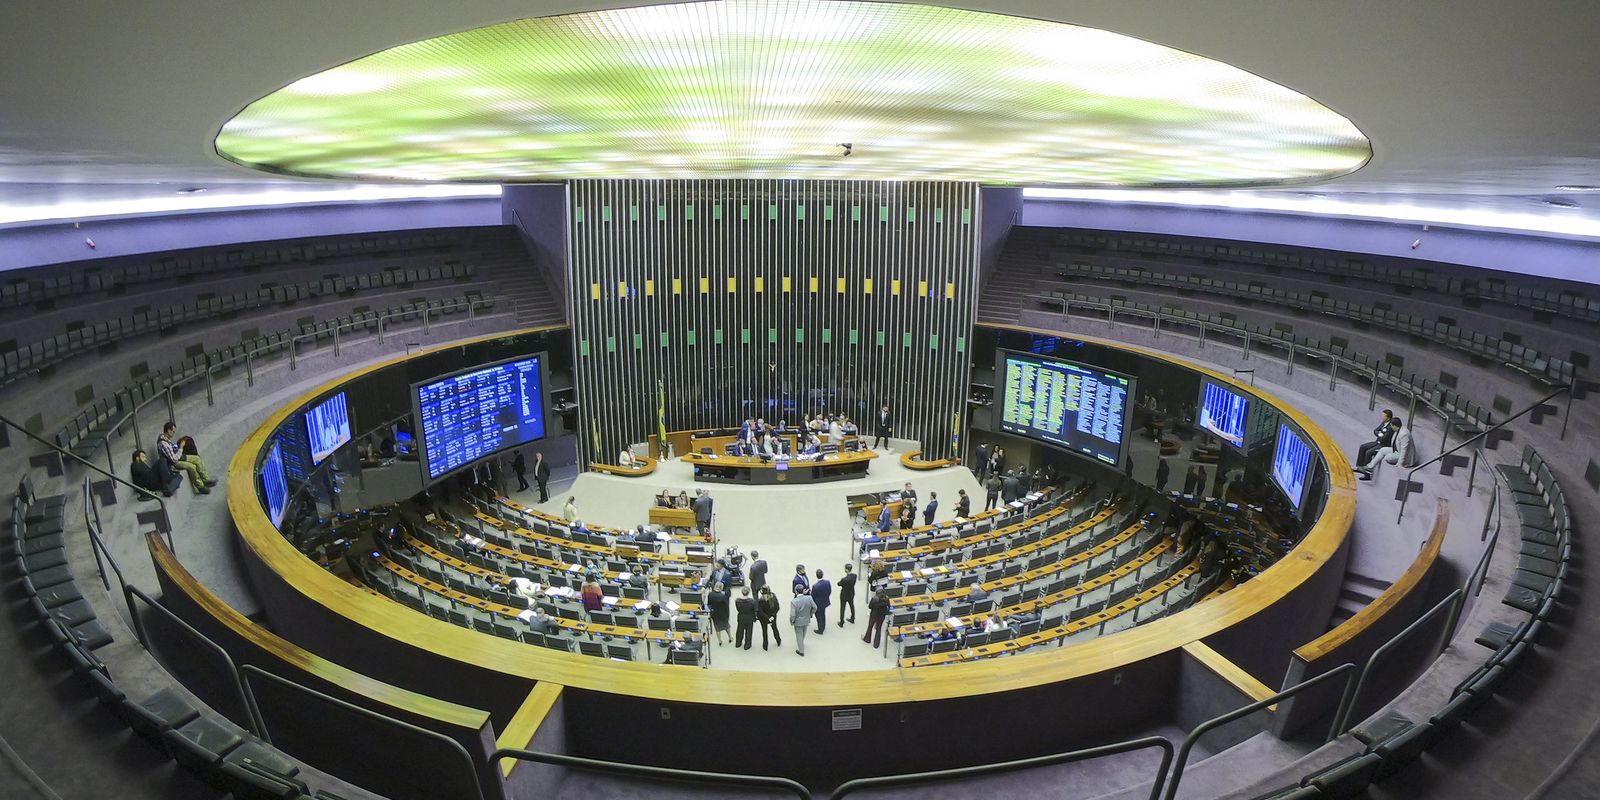 Brasil 500 Anos — Portal da Câmara dos Deputados